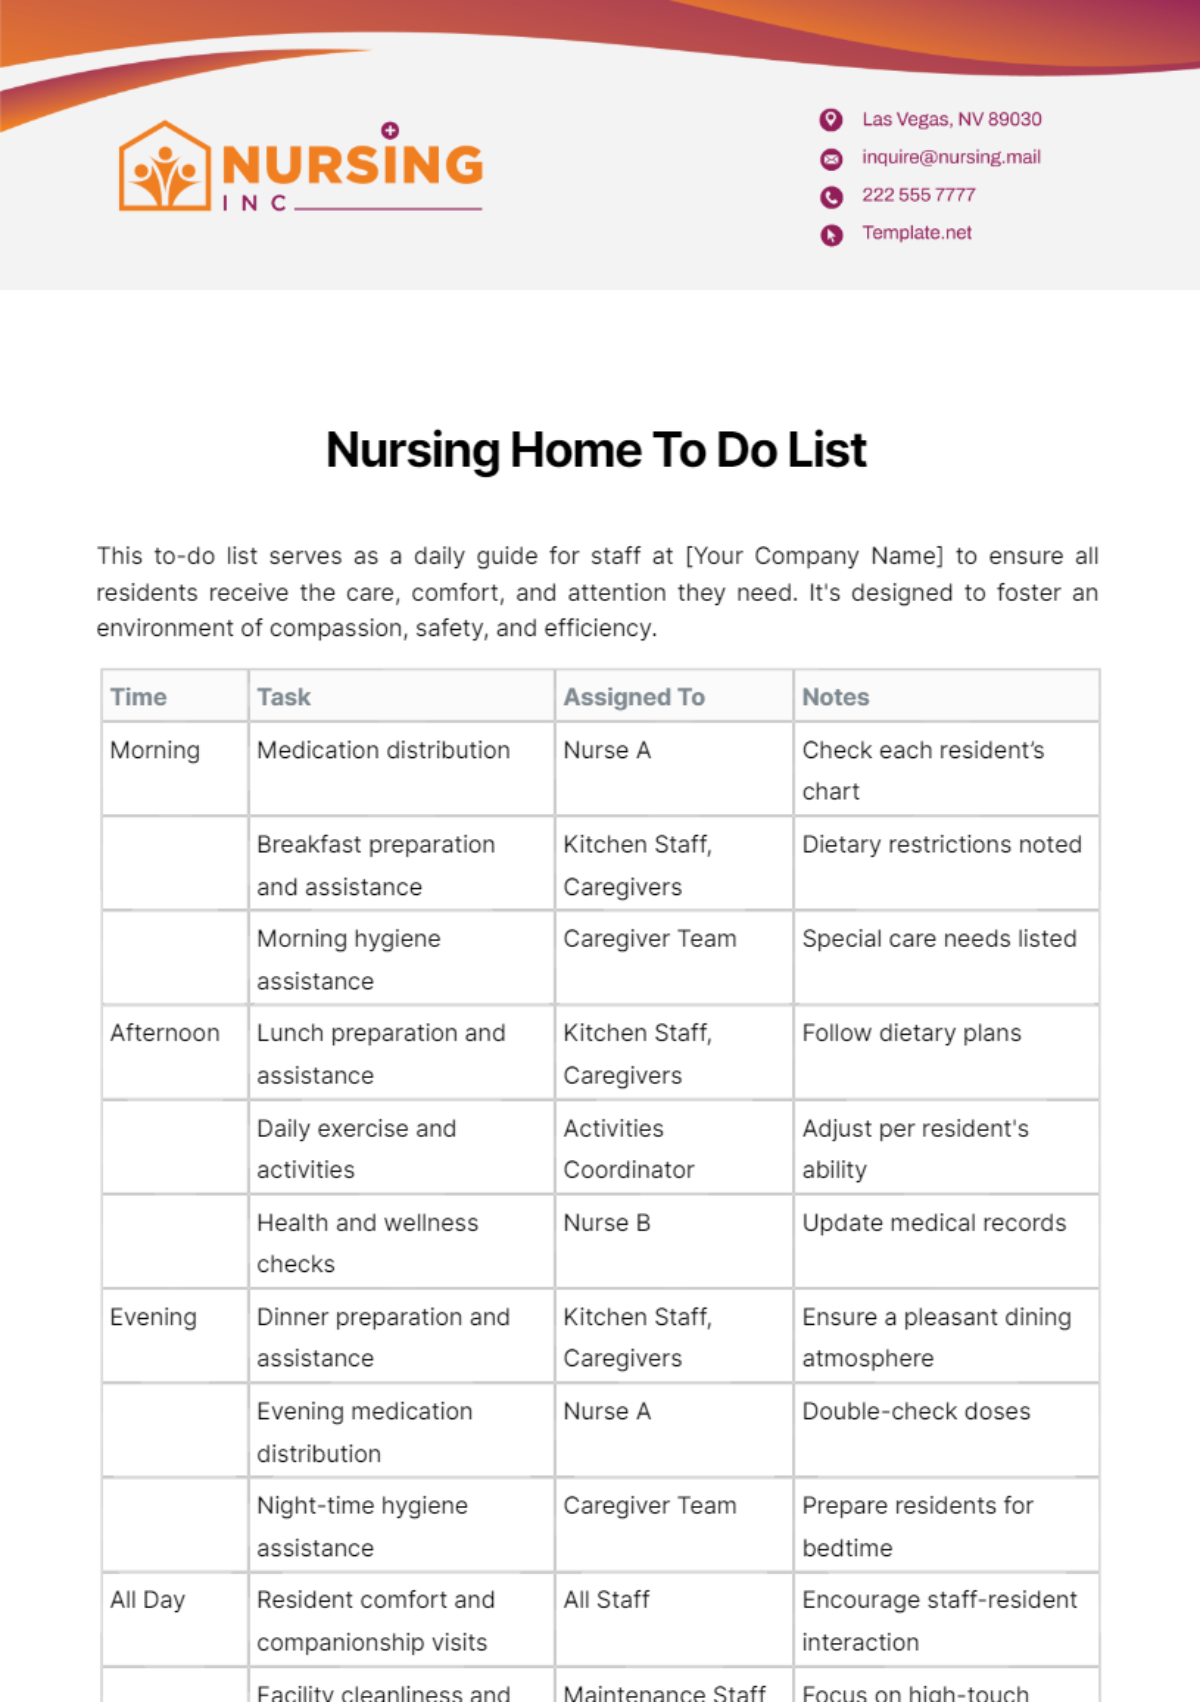 Nursing Home To Do List Template